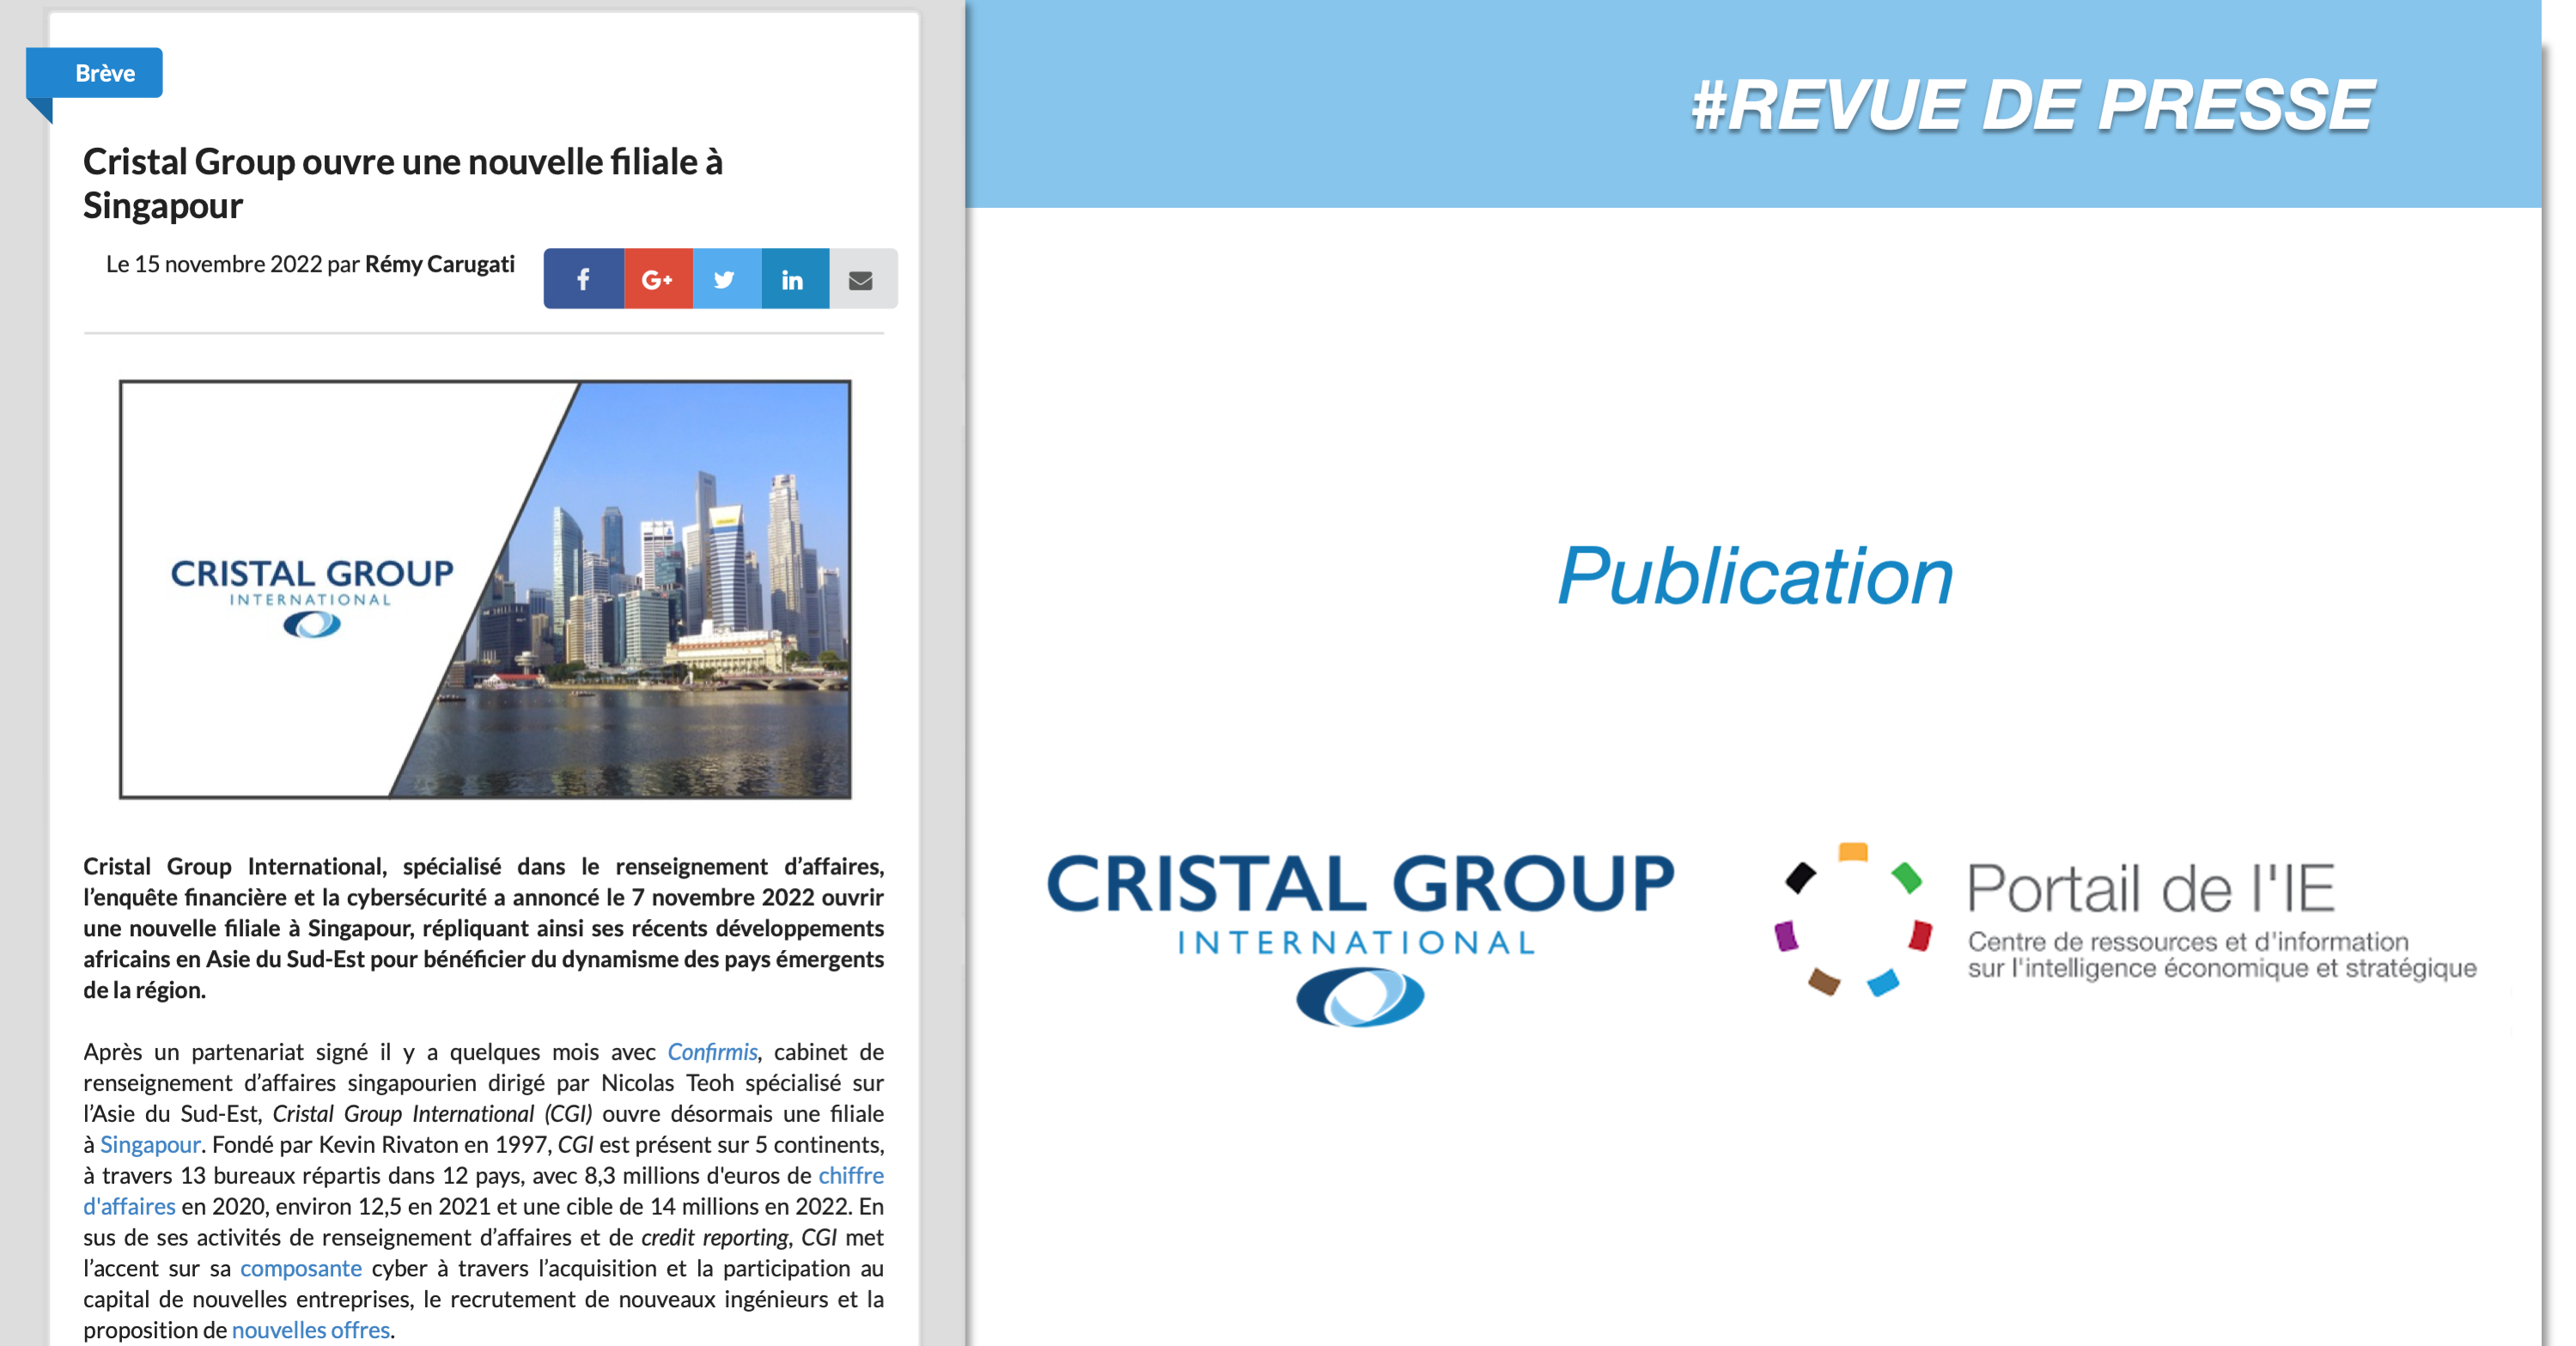 [REVUE DE PRESSE]: Cristal Group International ouvre une nouvelle filiale à Singapour